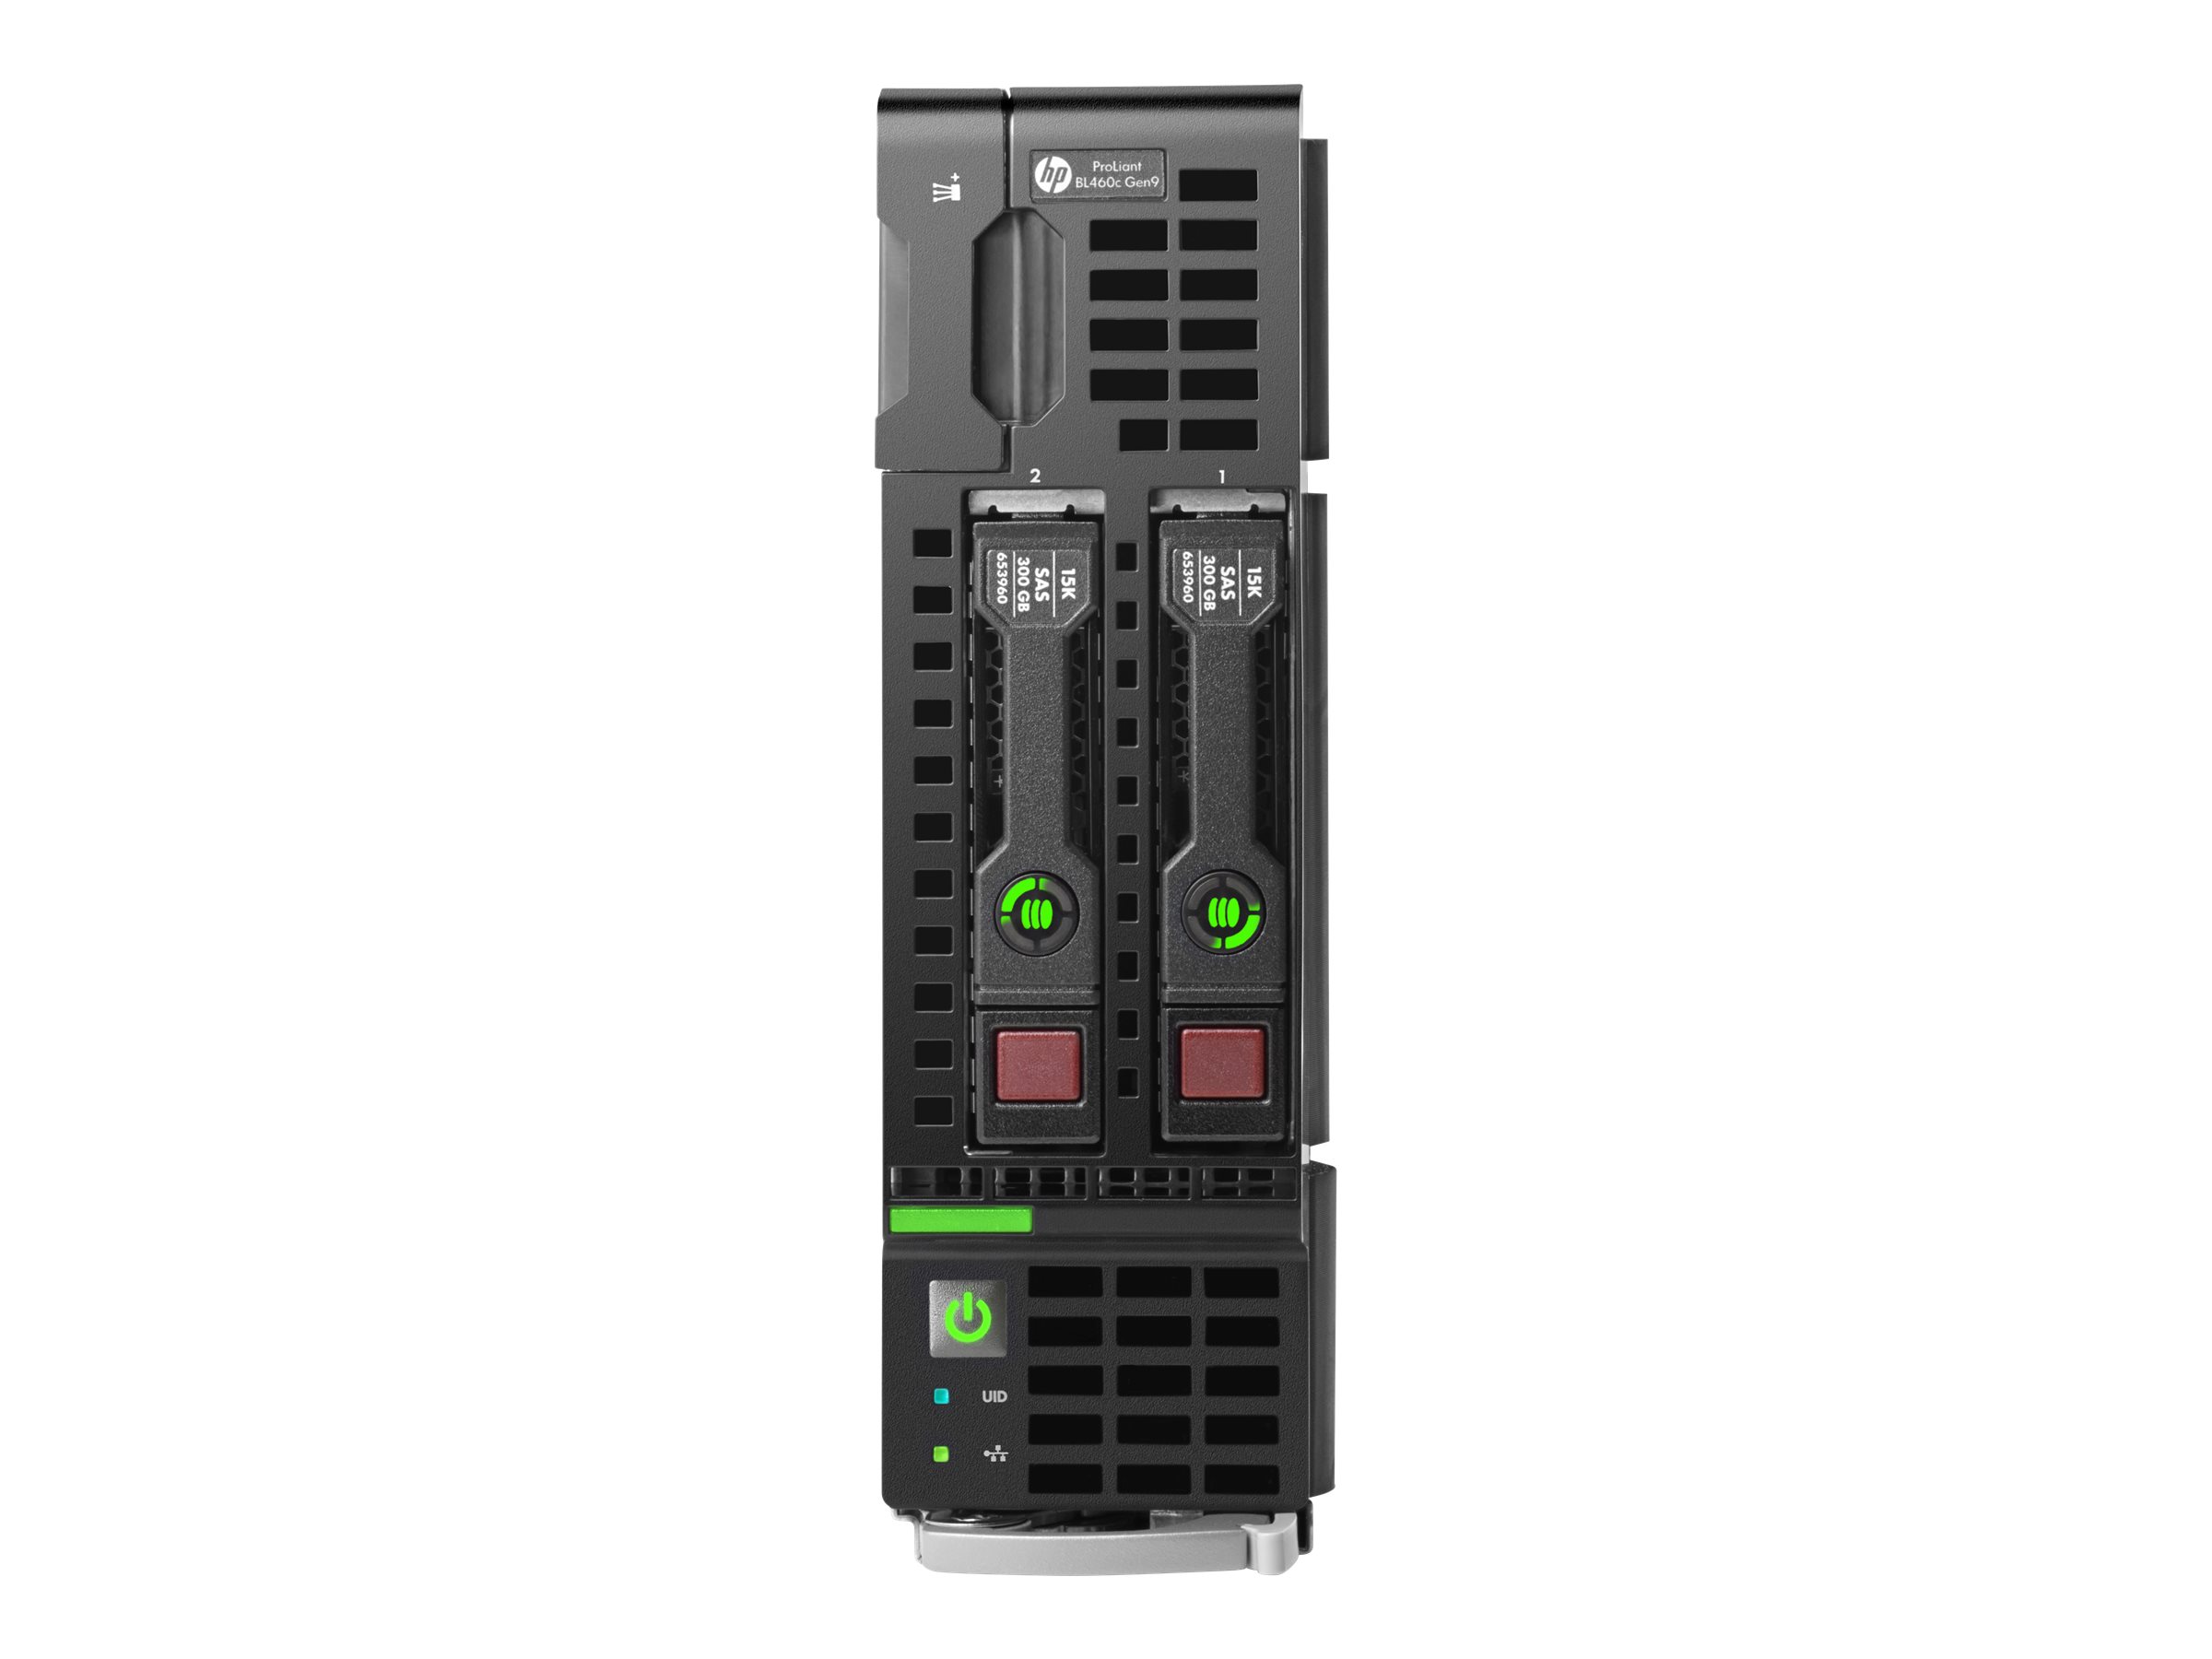 [Wiederaufbereitet] HPE ProLiant BL460c Gen9 - Server - Blade - zweiweg - keine CPU - RAM 0 GB